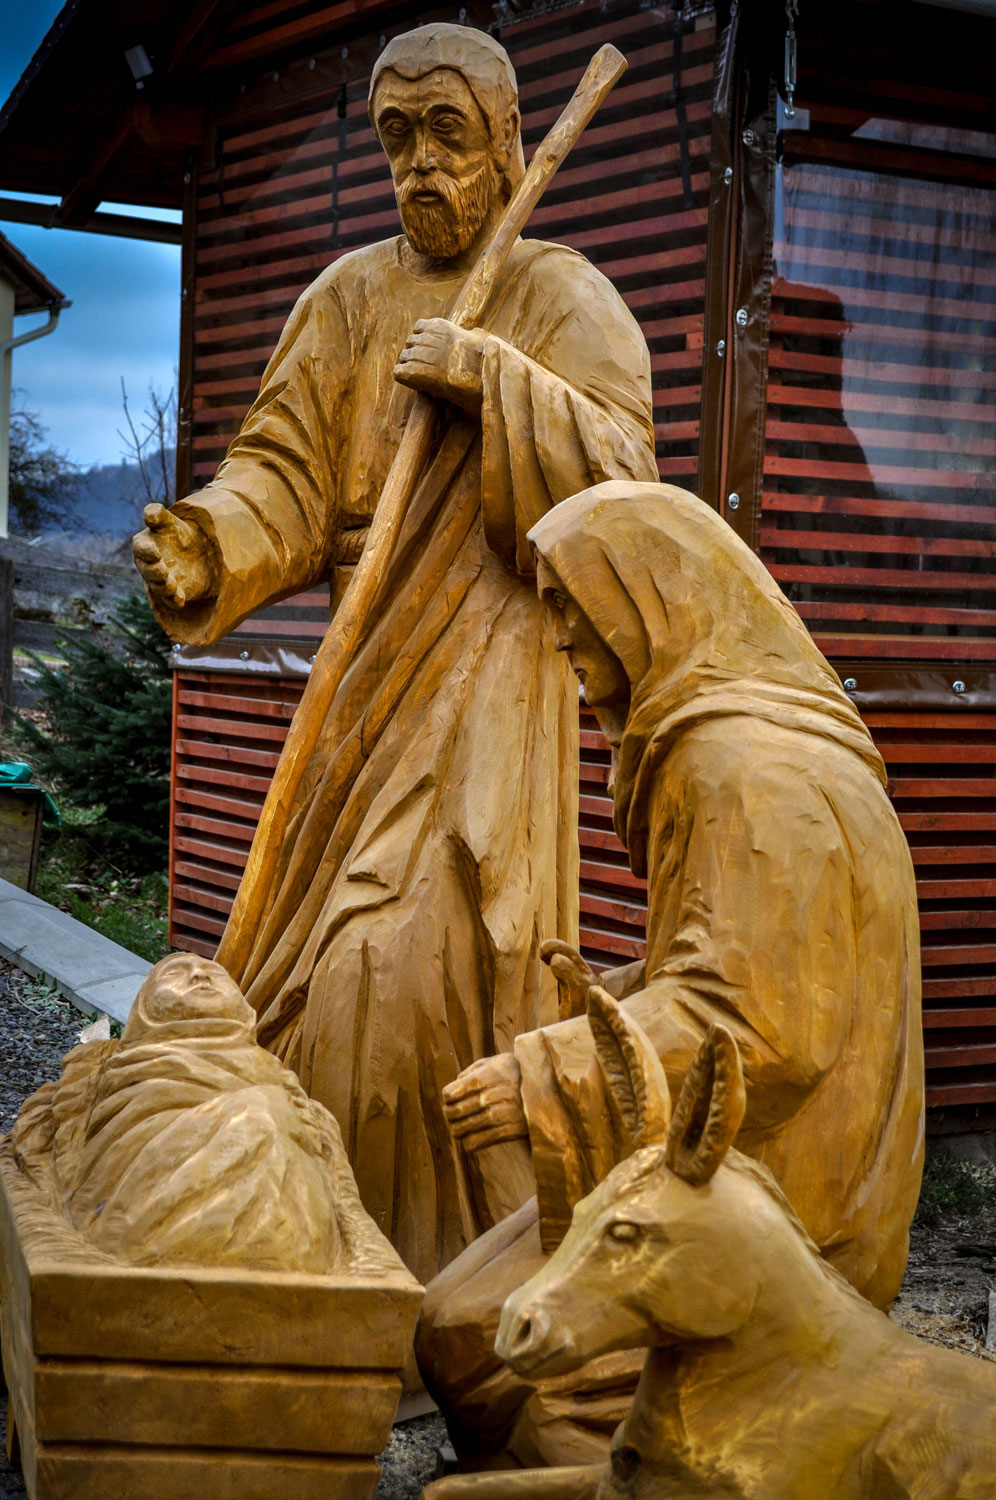 drevorezba-carving-wood-drevo-betlem-vyrezavani-rezbar-radekzdrazil-20201212-06a